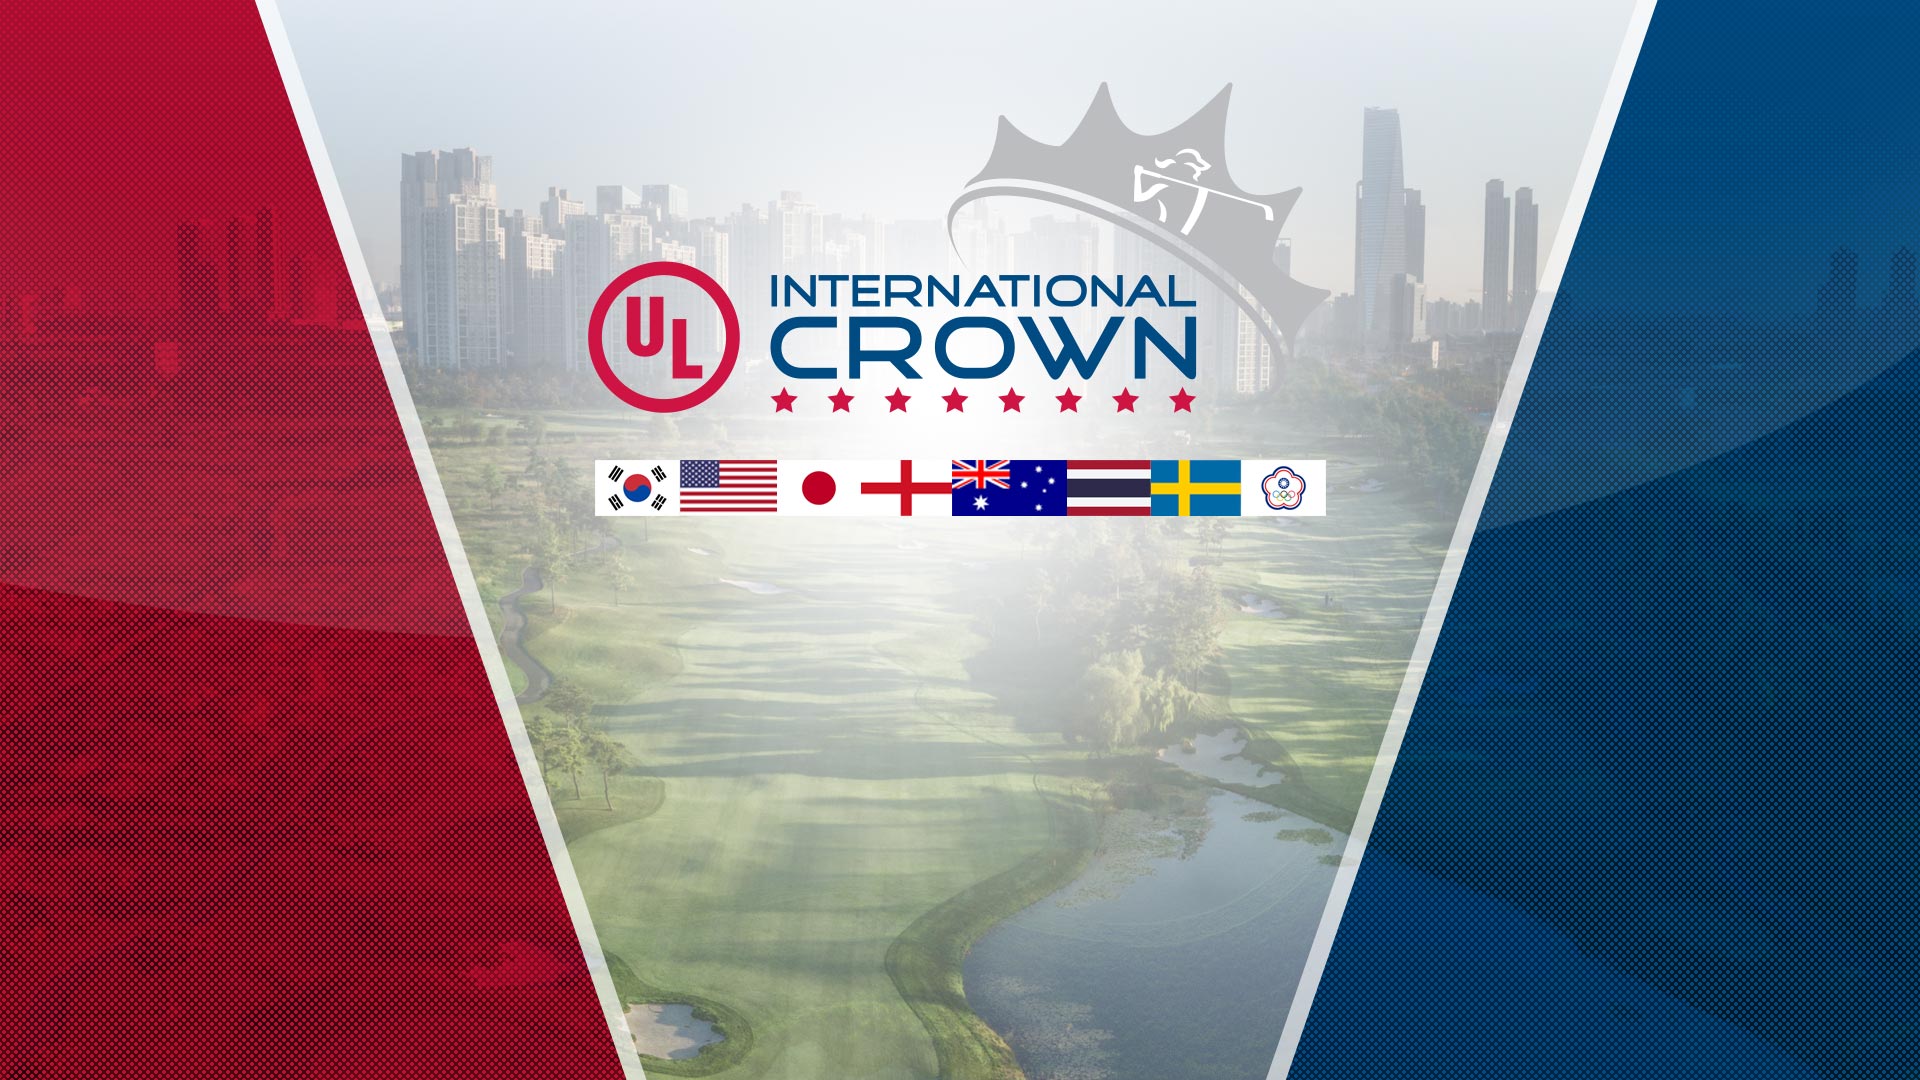 UL International Crown ngày thứ 3: Chính thức bị huỷ bỏ vì cơn bão Kong Rey